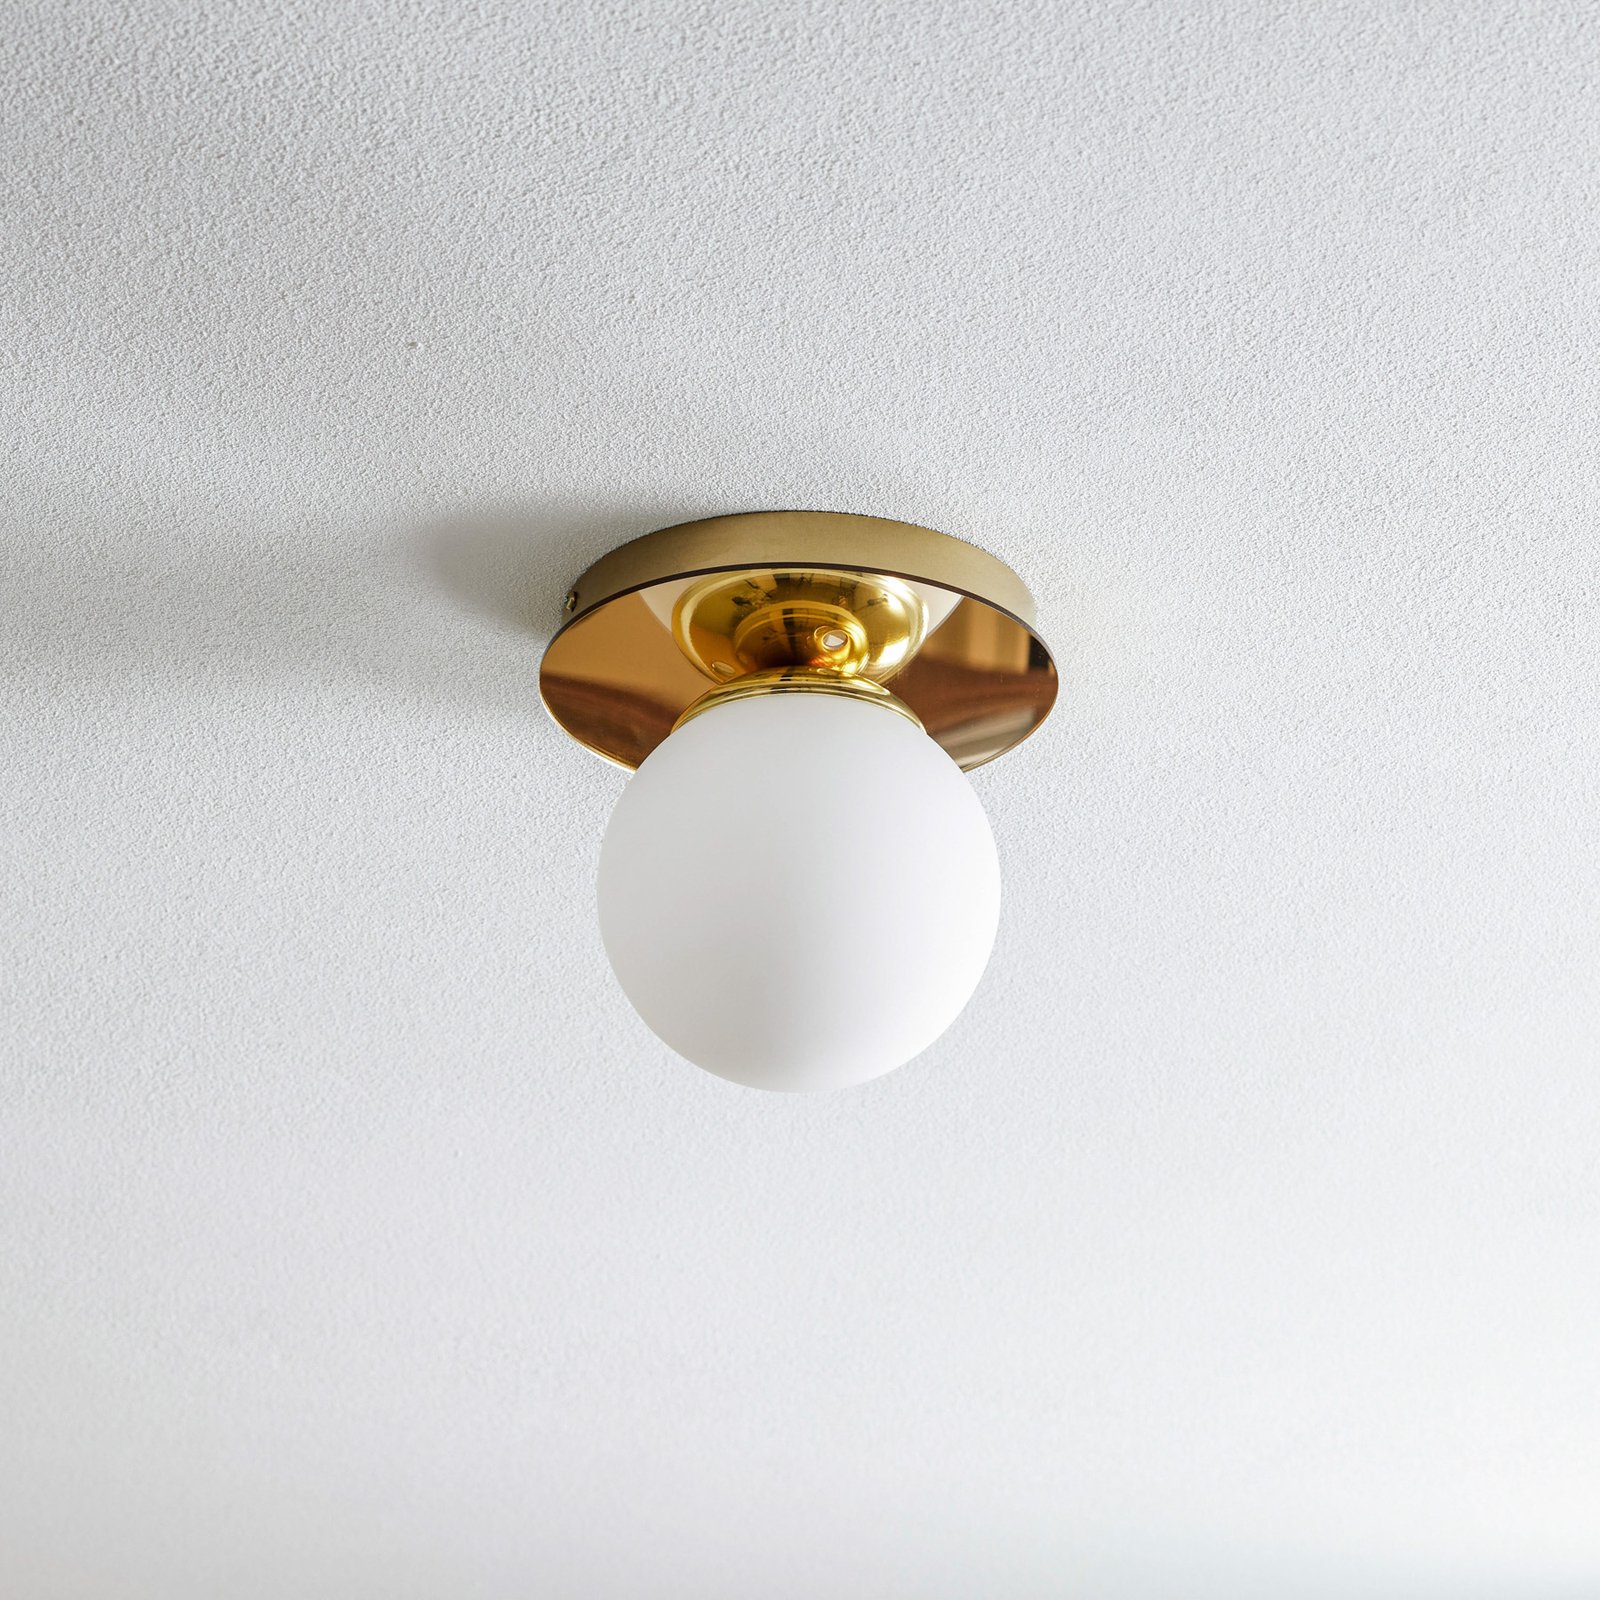 Plato ceiling light, one-bulb, Ø 22 cm